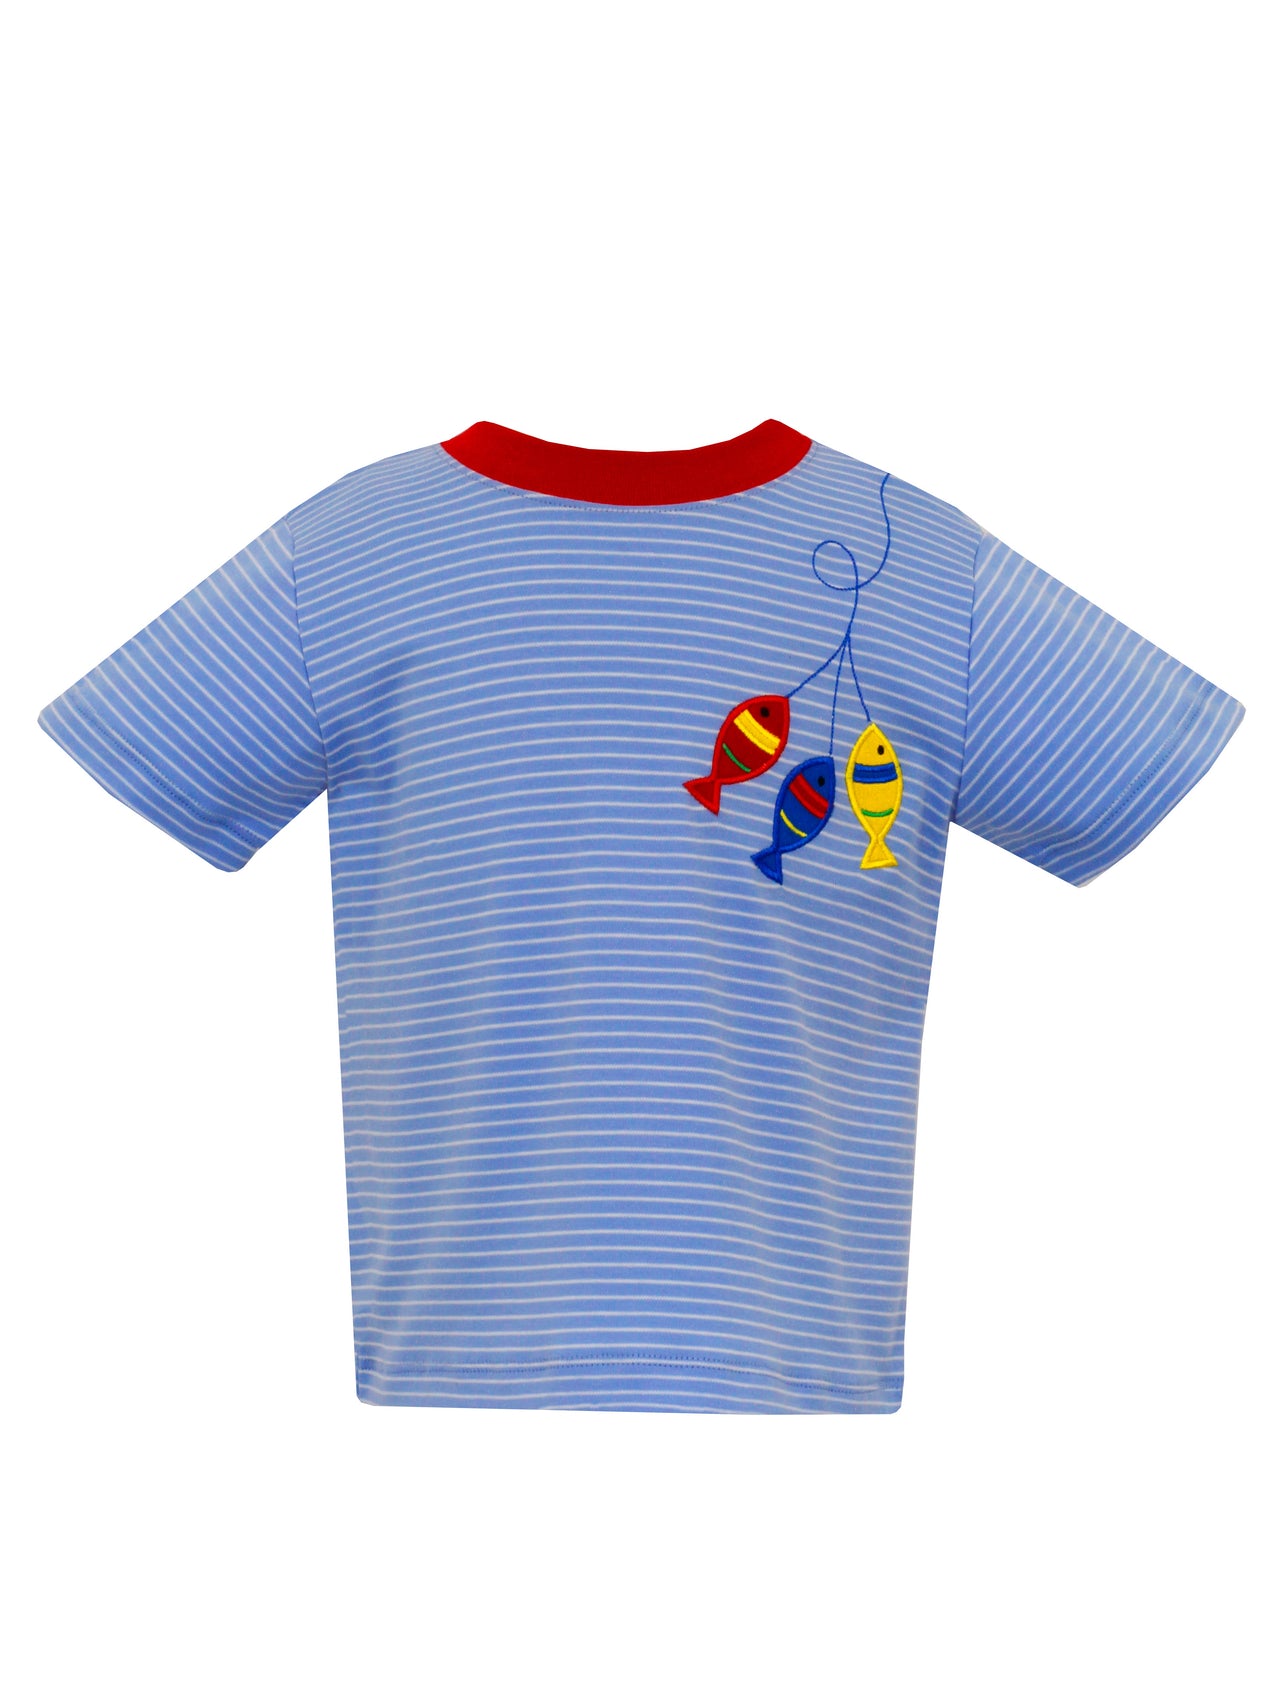 Claire & Charlie Boy's Knit Stripe T-Shirt 5103